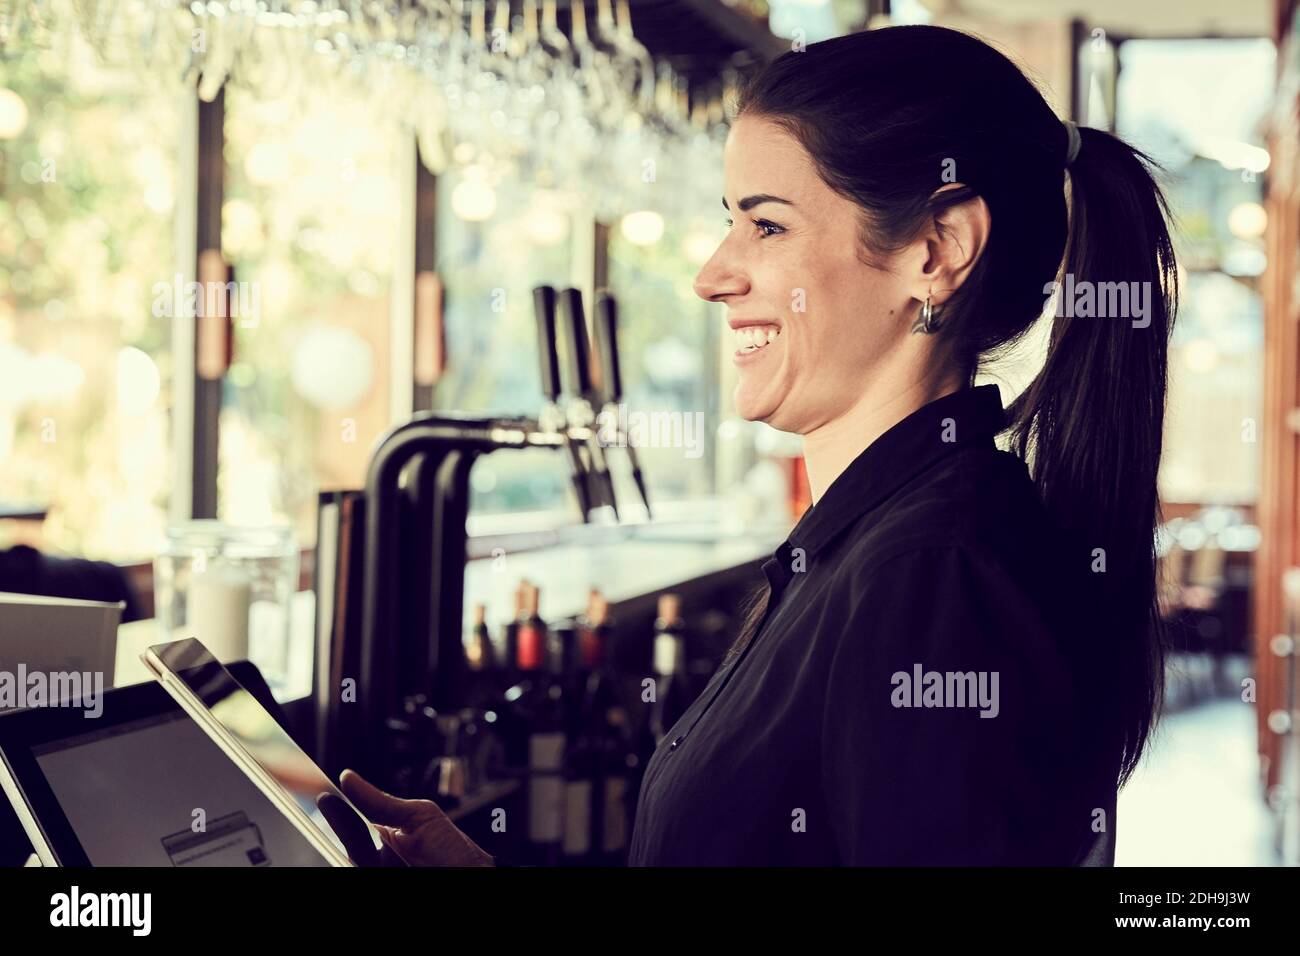 Femme souriante avec une tablette numérique qui regarde loin en se tenant debout dans le café Banque D'Images